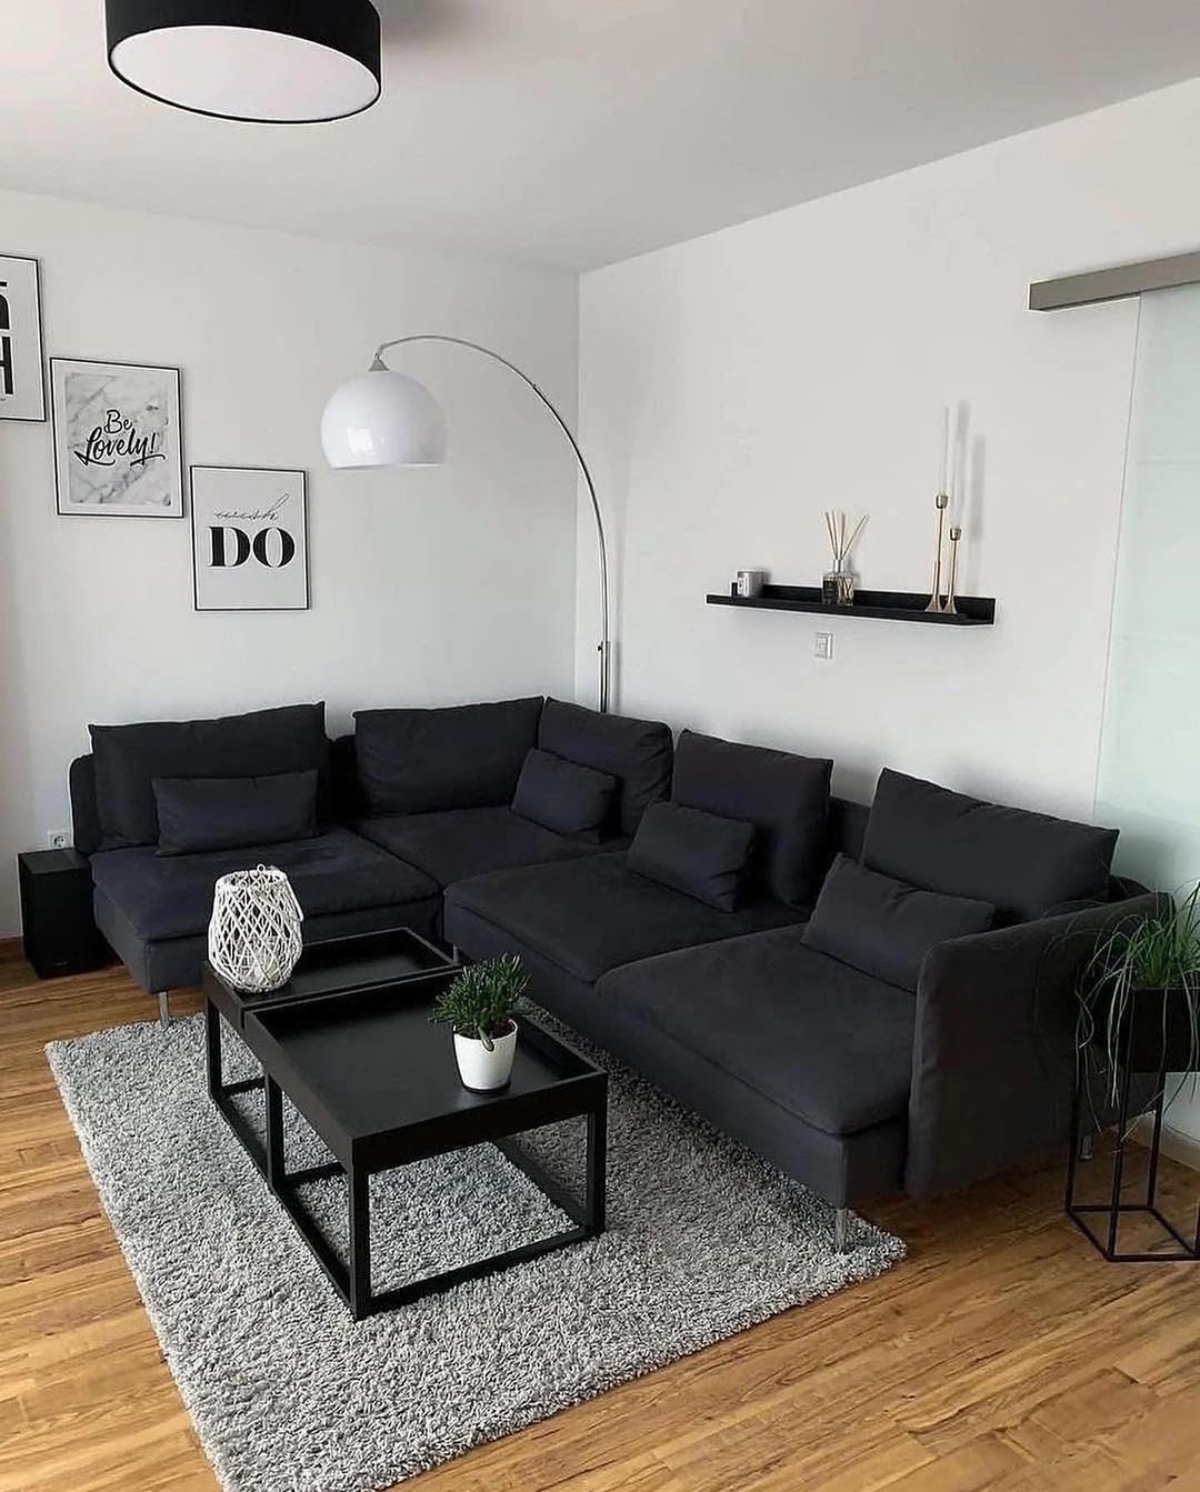 divano nero in soggiorno piccolo con pareti bianche